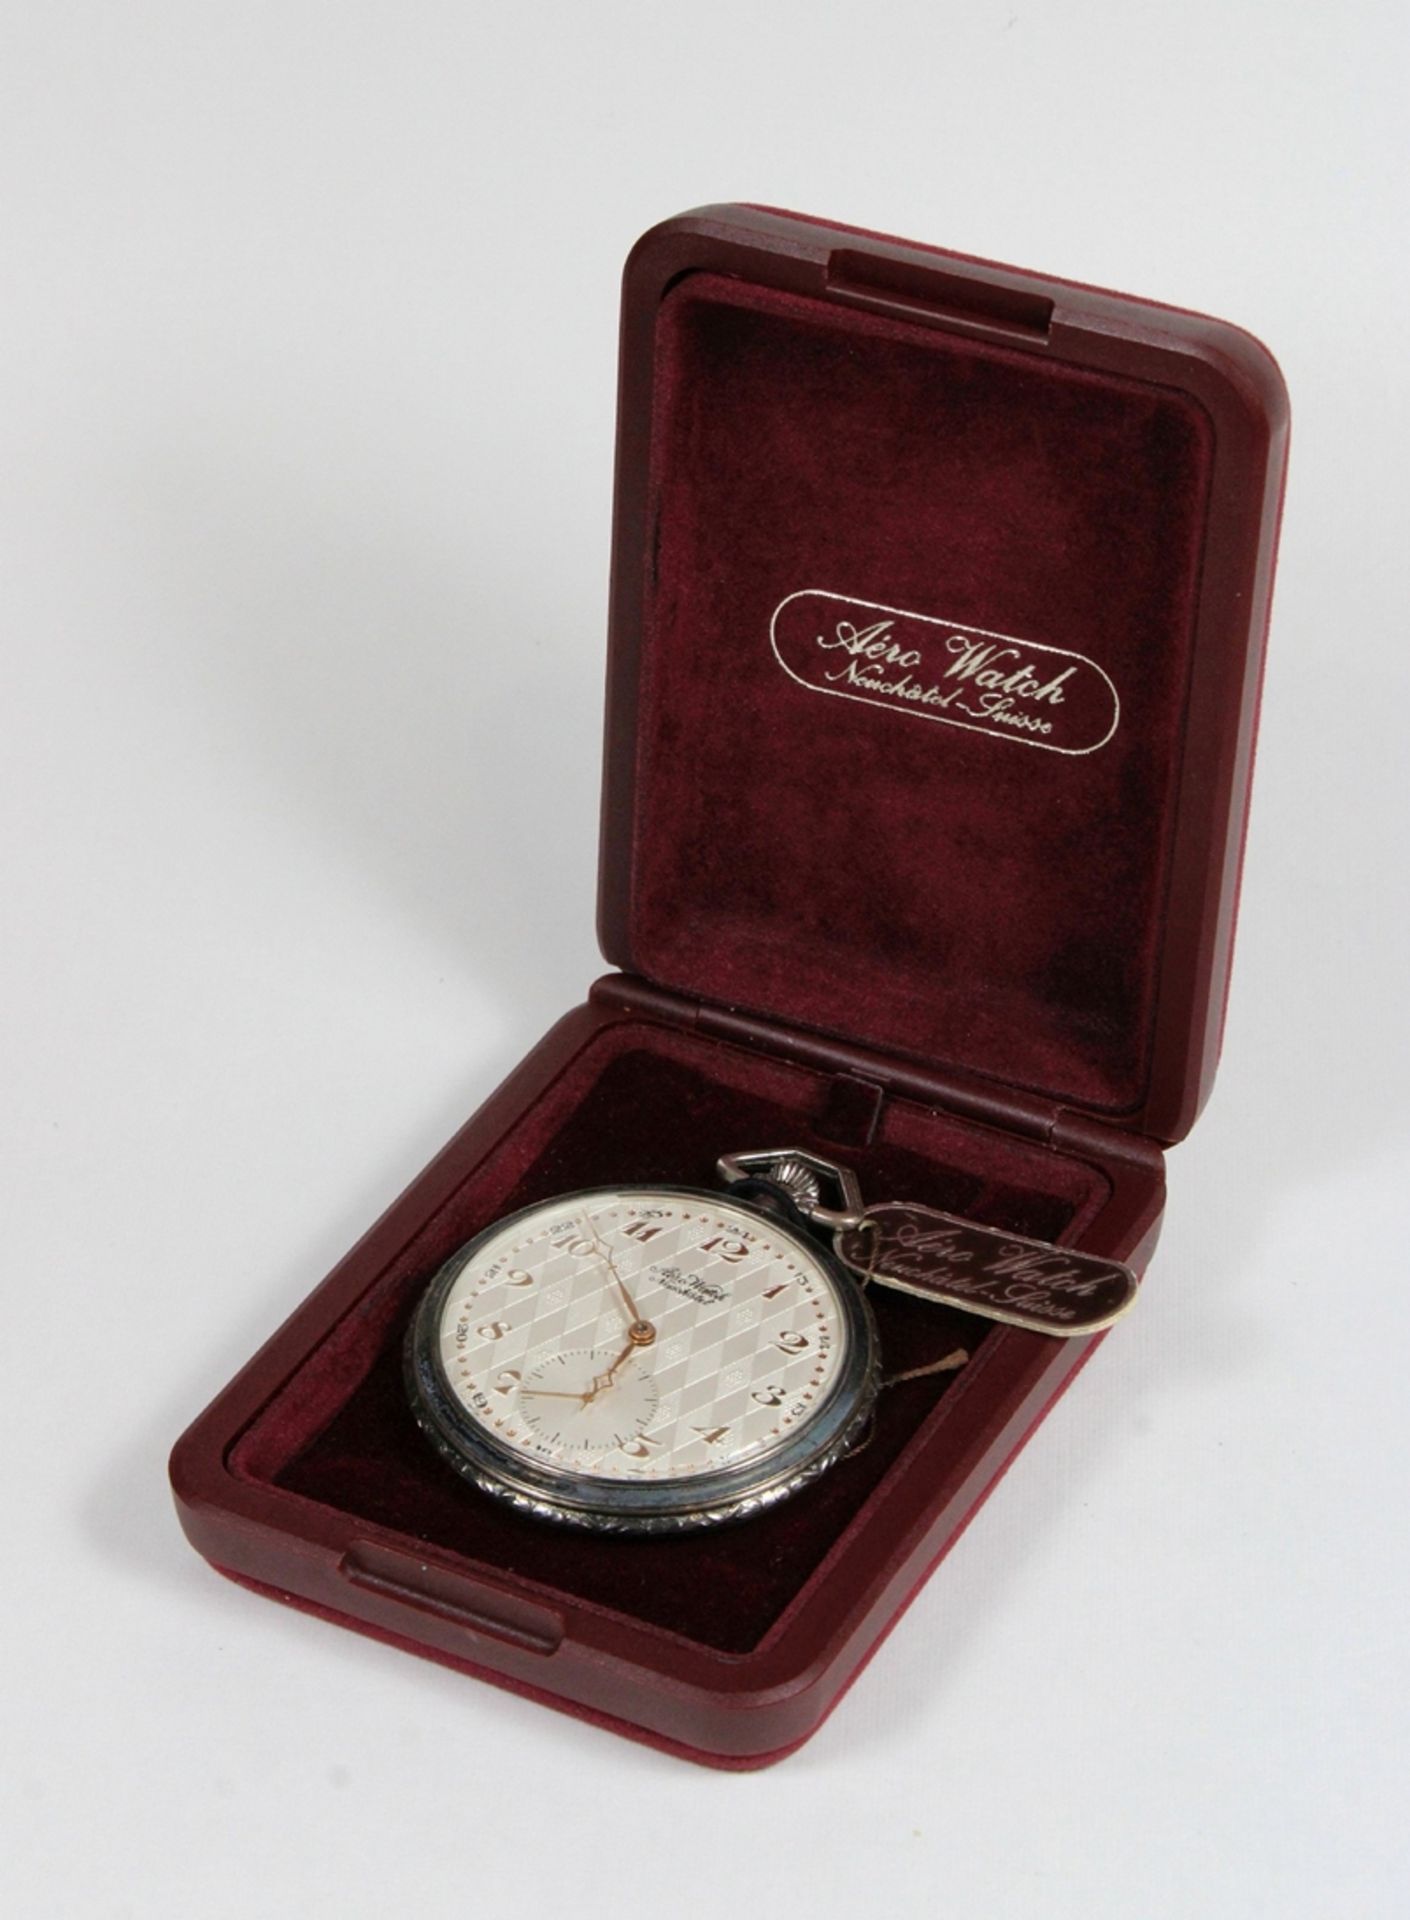 Aero Watch Neuchatel Herrentaschenuhr, Silber, Gewicht: 85 g. Guter Zustand, Uhr läuft. - Bild 3 aus 3